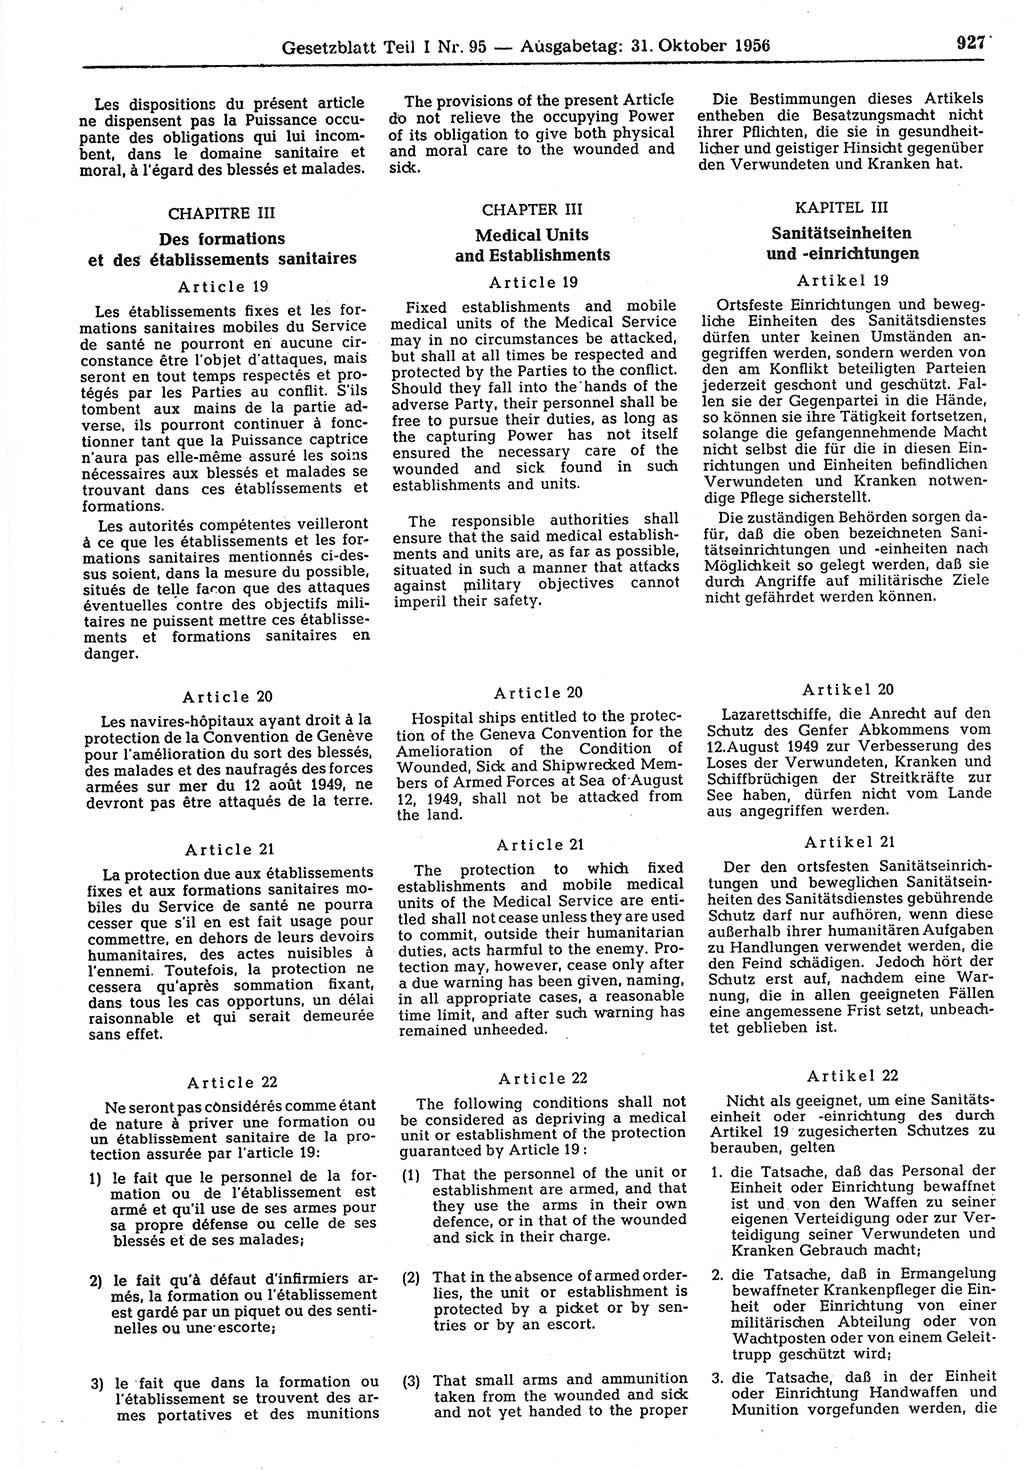 Gesetzblatt (GBl.) der Deutschen Demokratischen Republik (DDR) Teil Ⅰ 1956, Seite 927 (GBl. DDR Ⅰ 1956, S. 927)